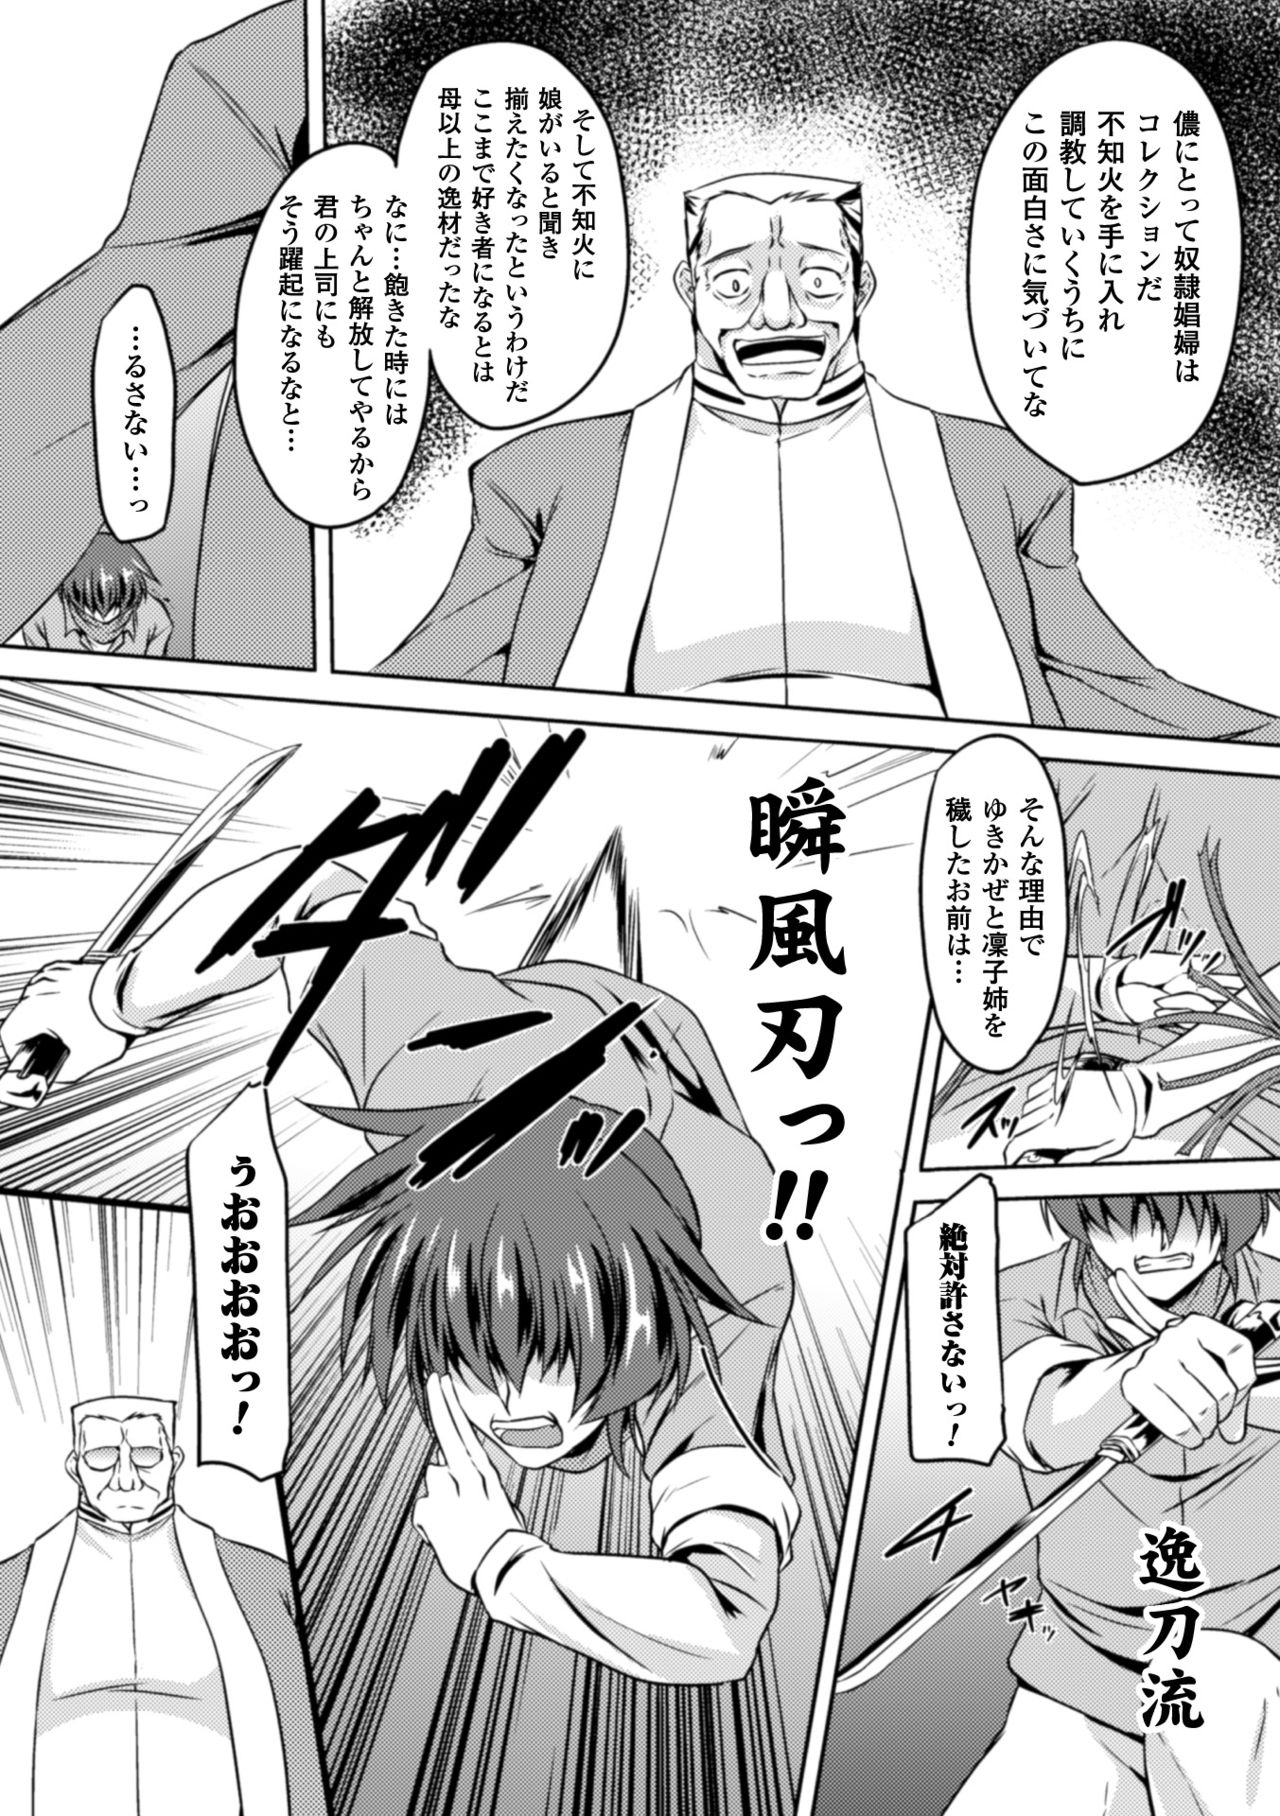 [Anthology] Seigi no Heroine Kangoku File Vol. 2 [Digital] page 18 full